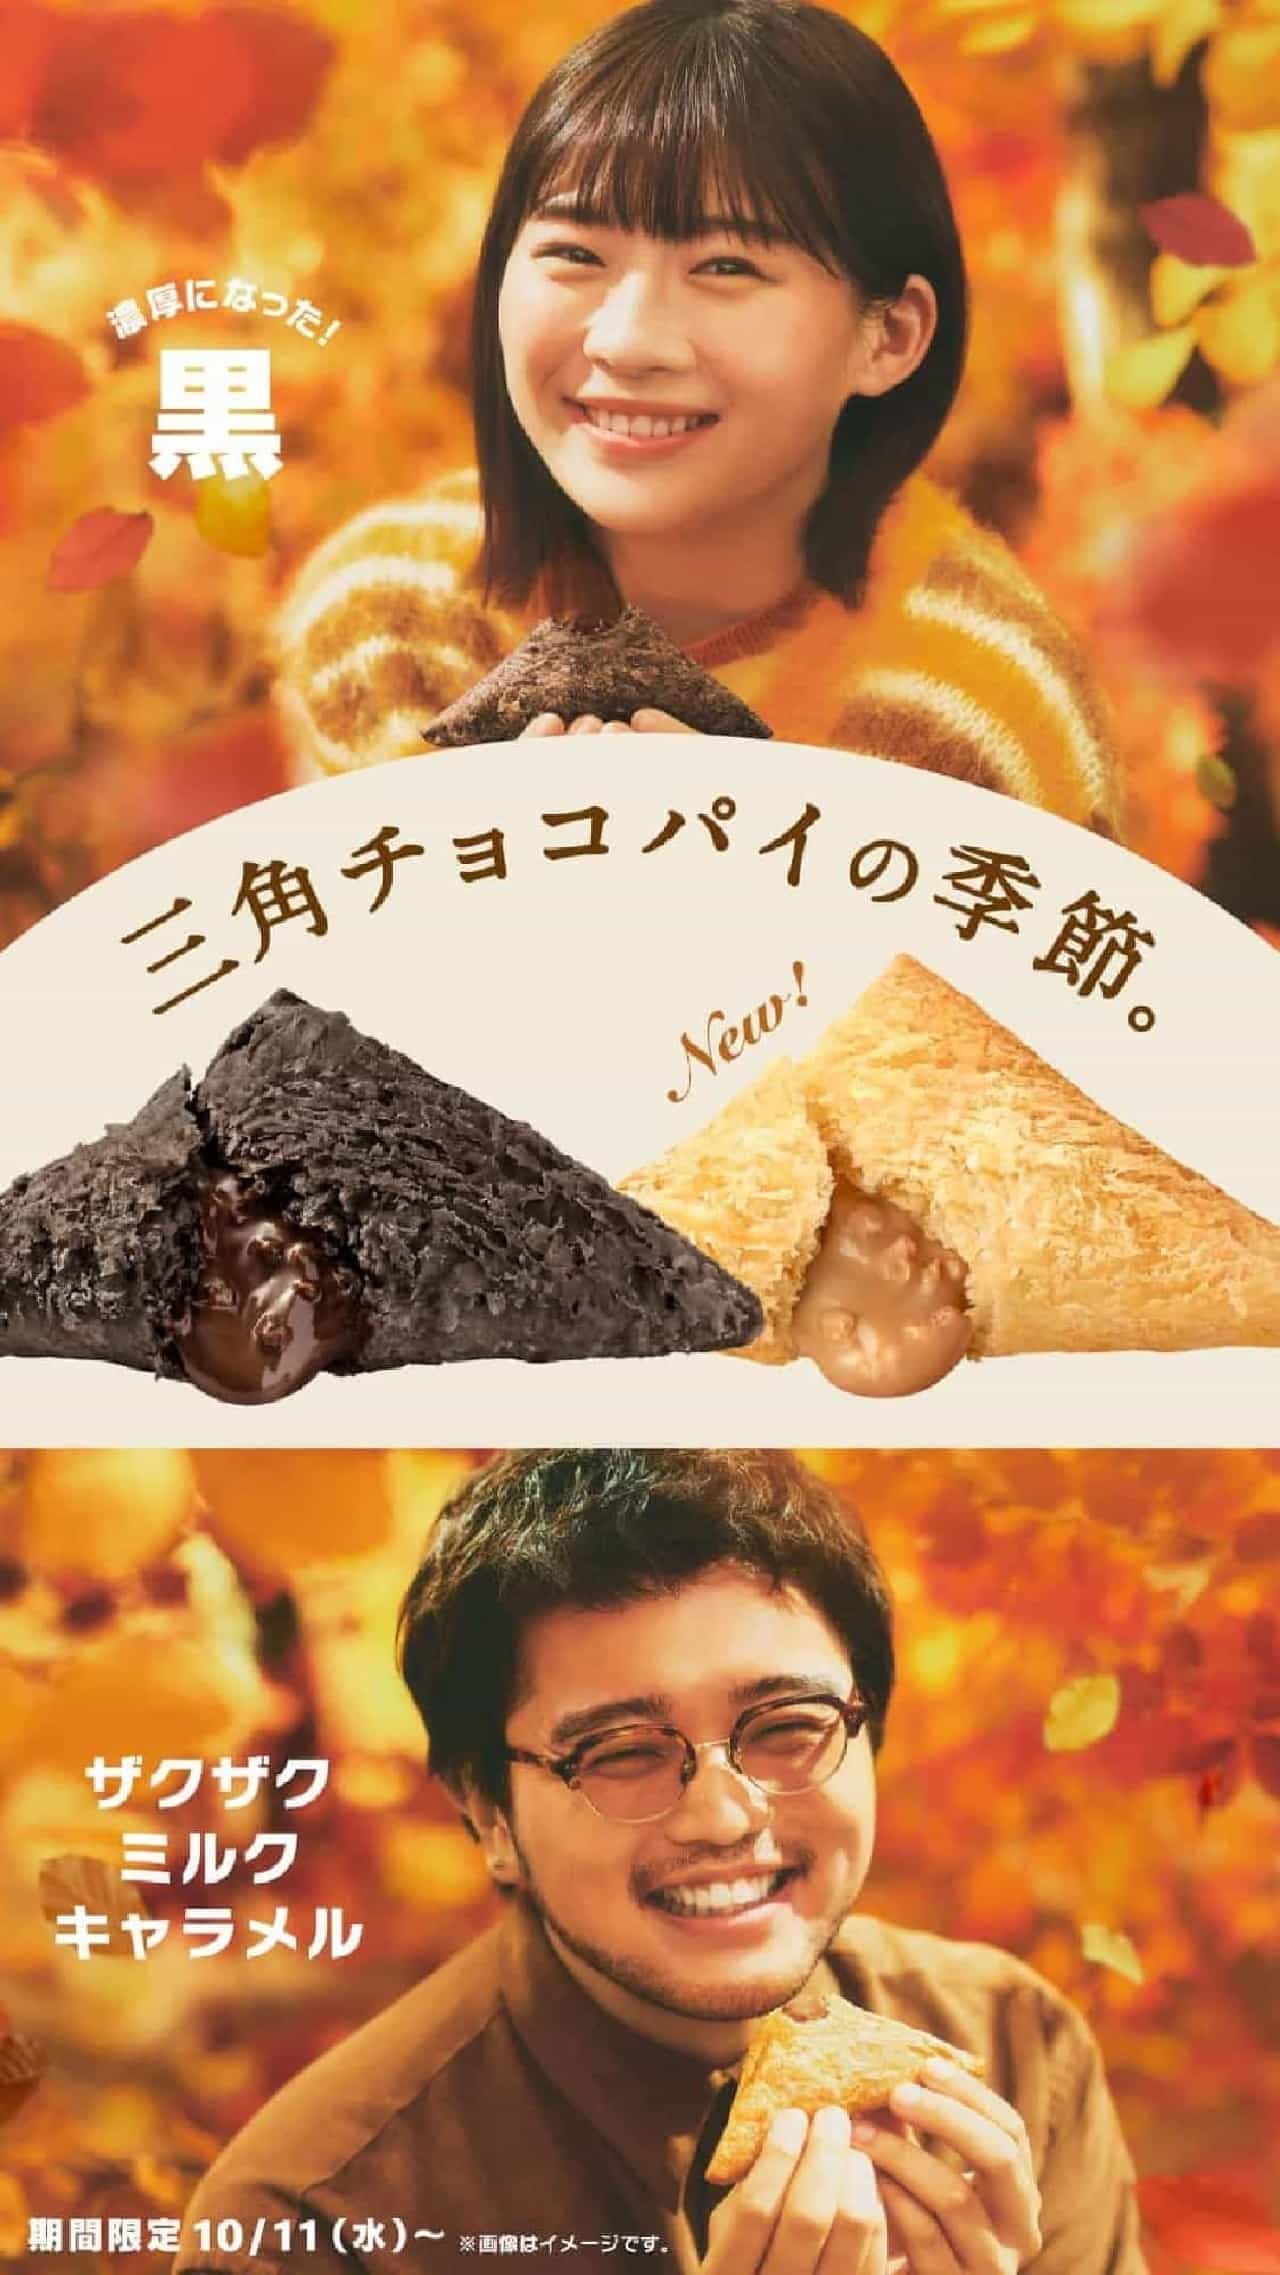 McDonald's "Triangle Choco Pie Black" and "Triangle Choco Pie Zaku Zaku Milk Caramel".